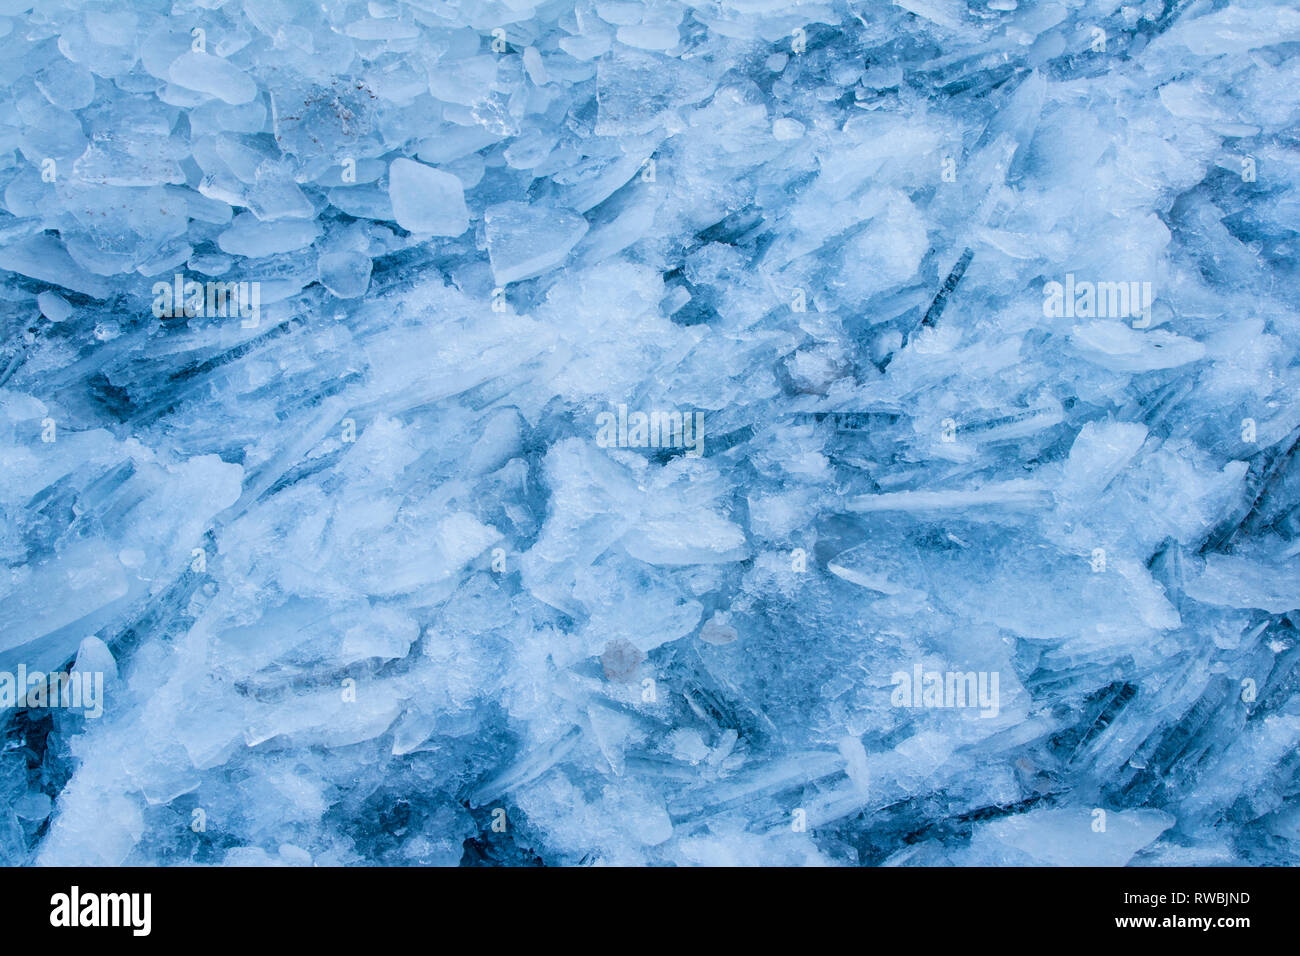 Tessons de glace le long de la côte du lac Michigan. Milwaukee, WI. Janvier 2018 Banque D'Images